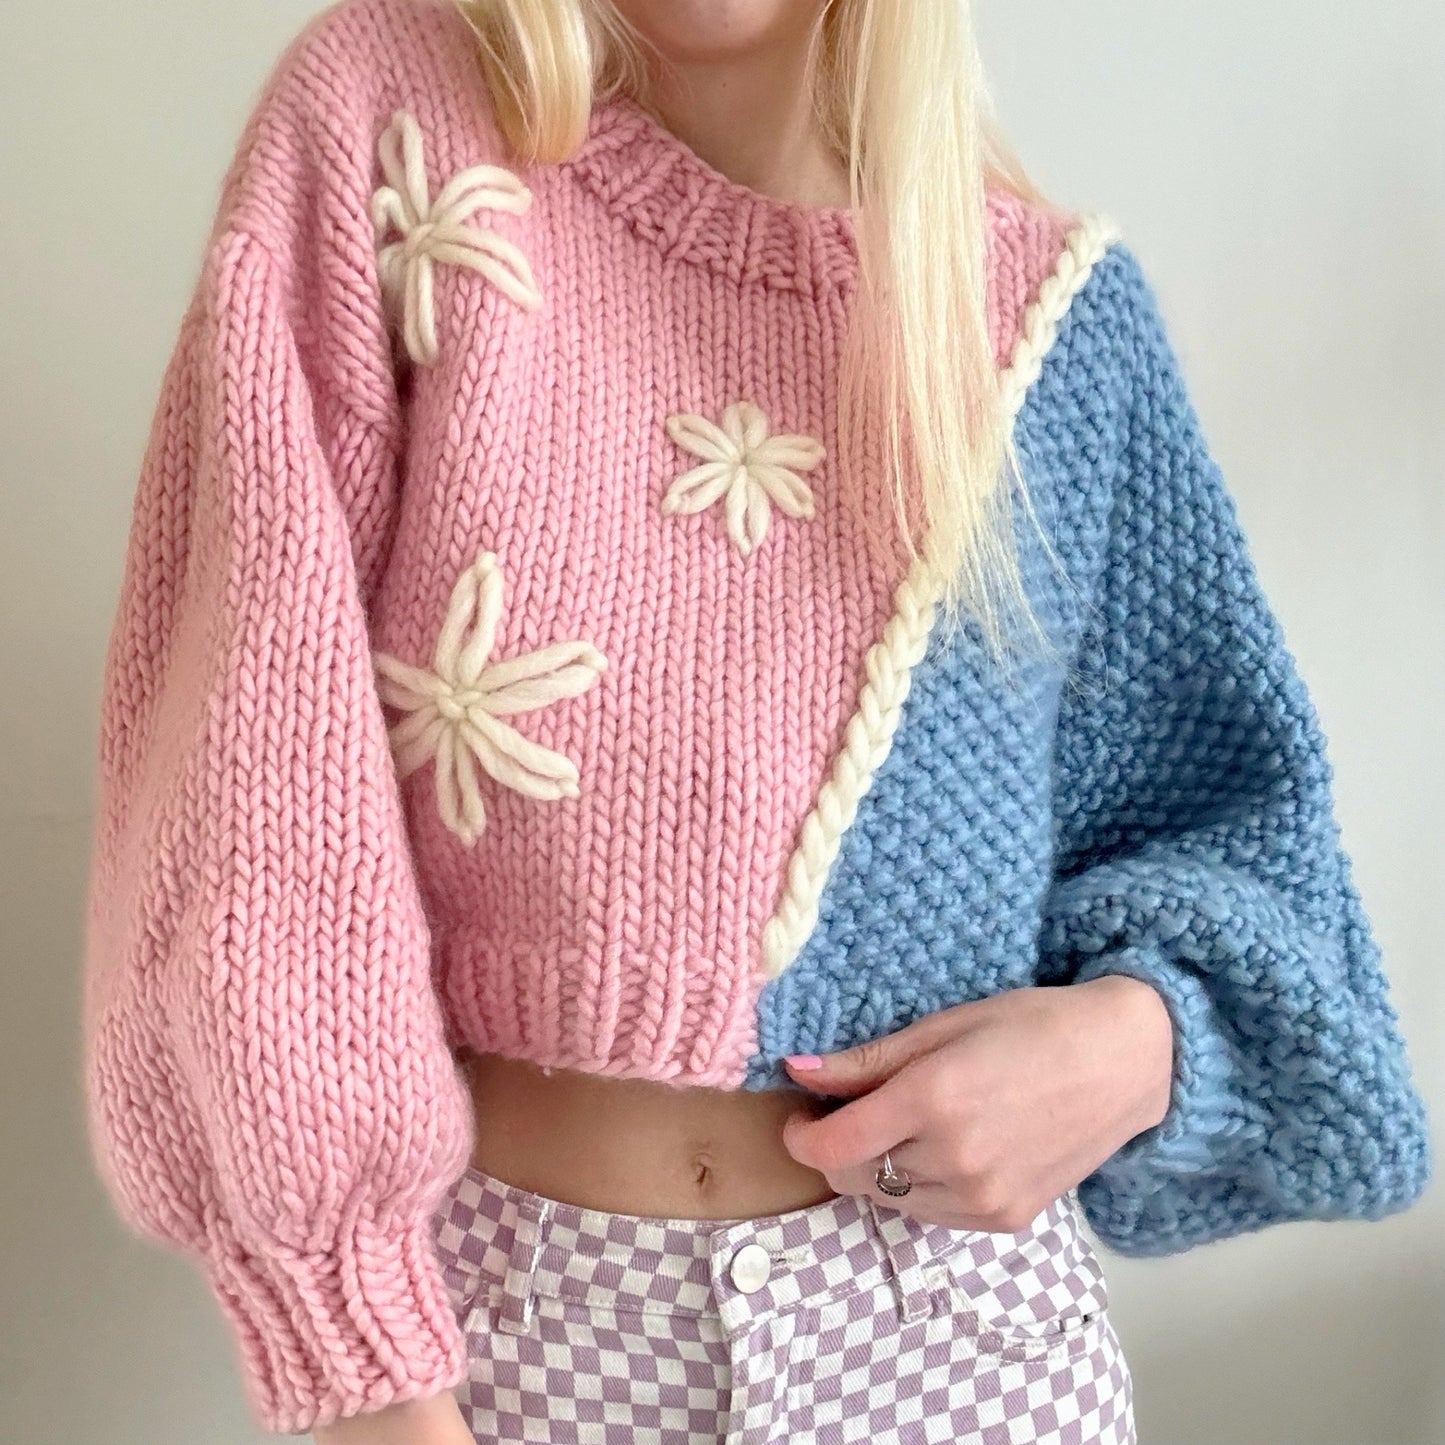 Daisy Chain Sweater Knitting Pattern